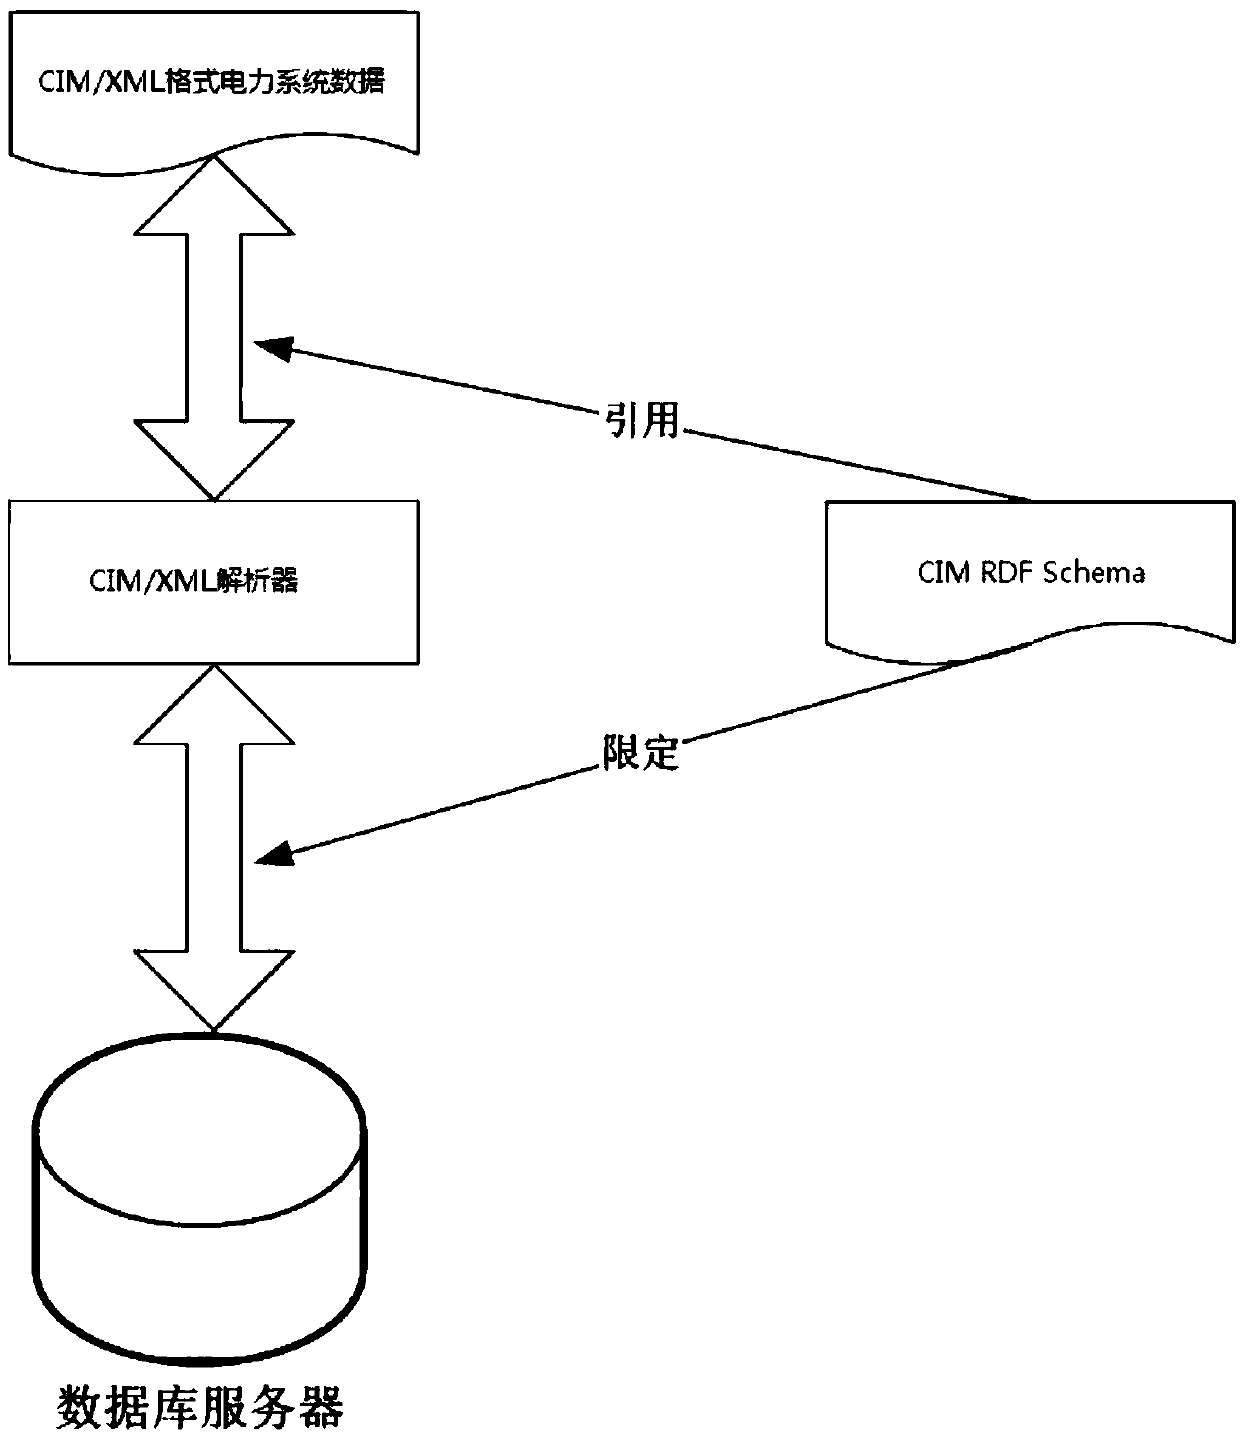 Host and backup data heterogeneous method based on CIM/XML